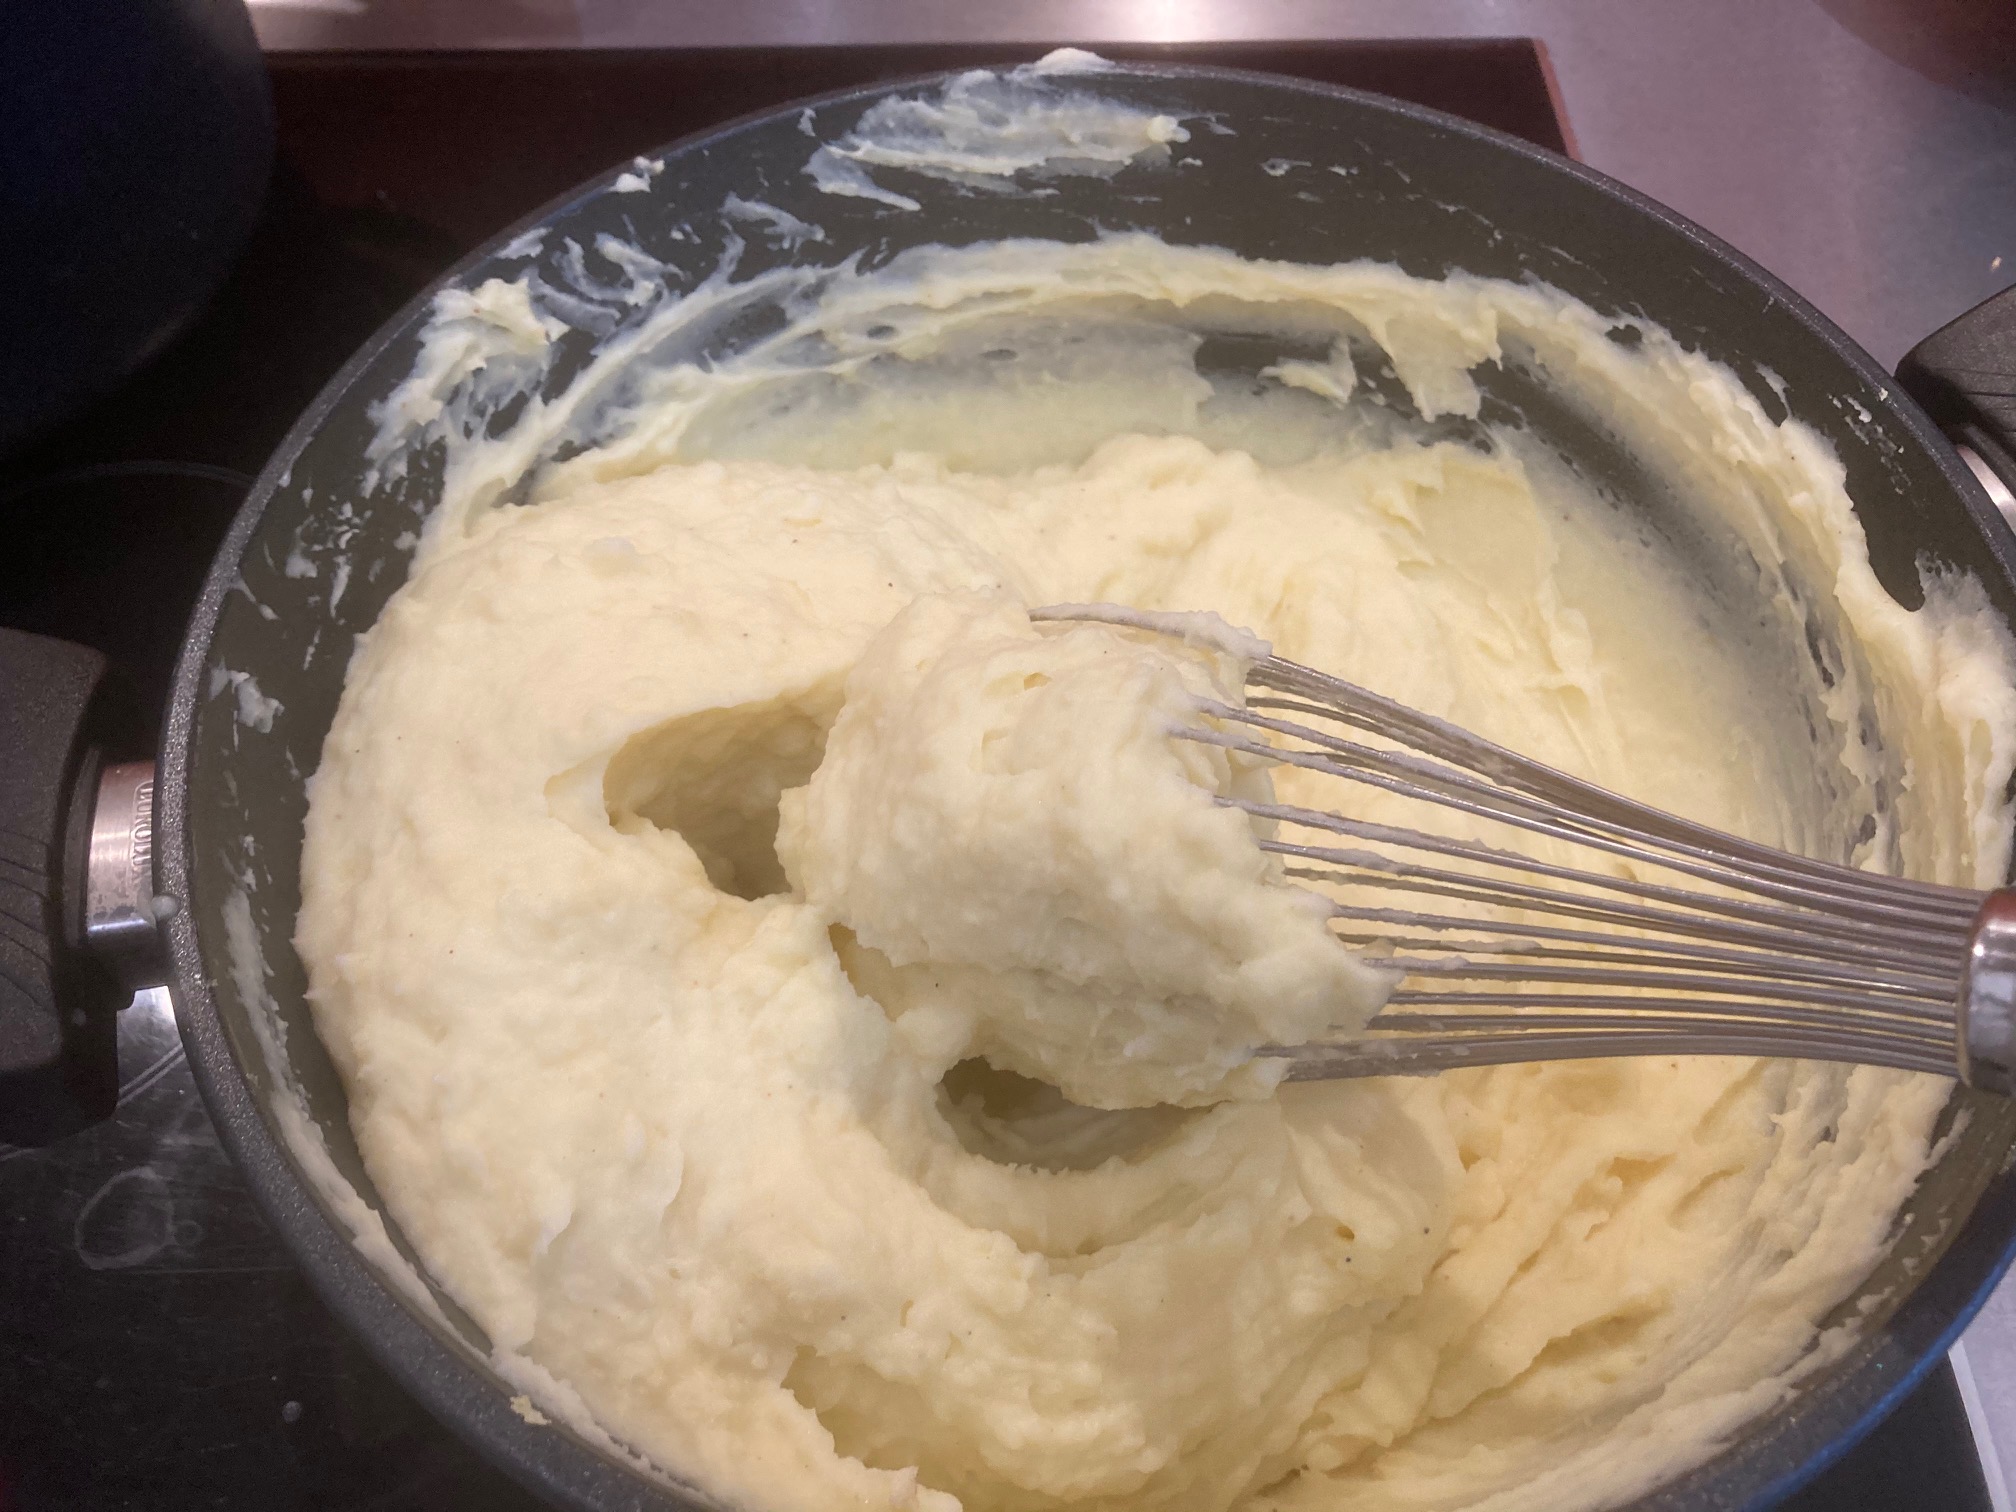 Classic mashed potatoes